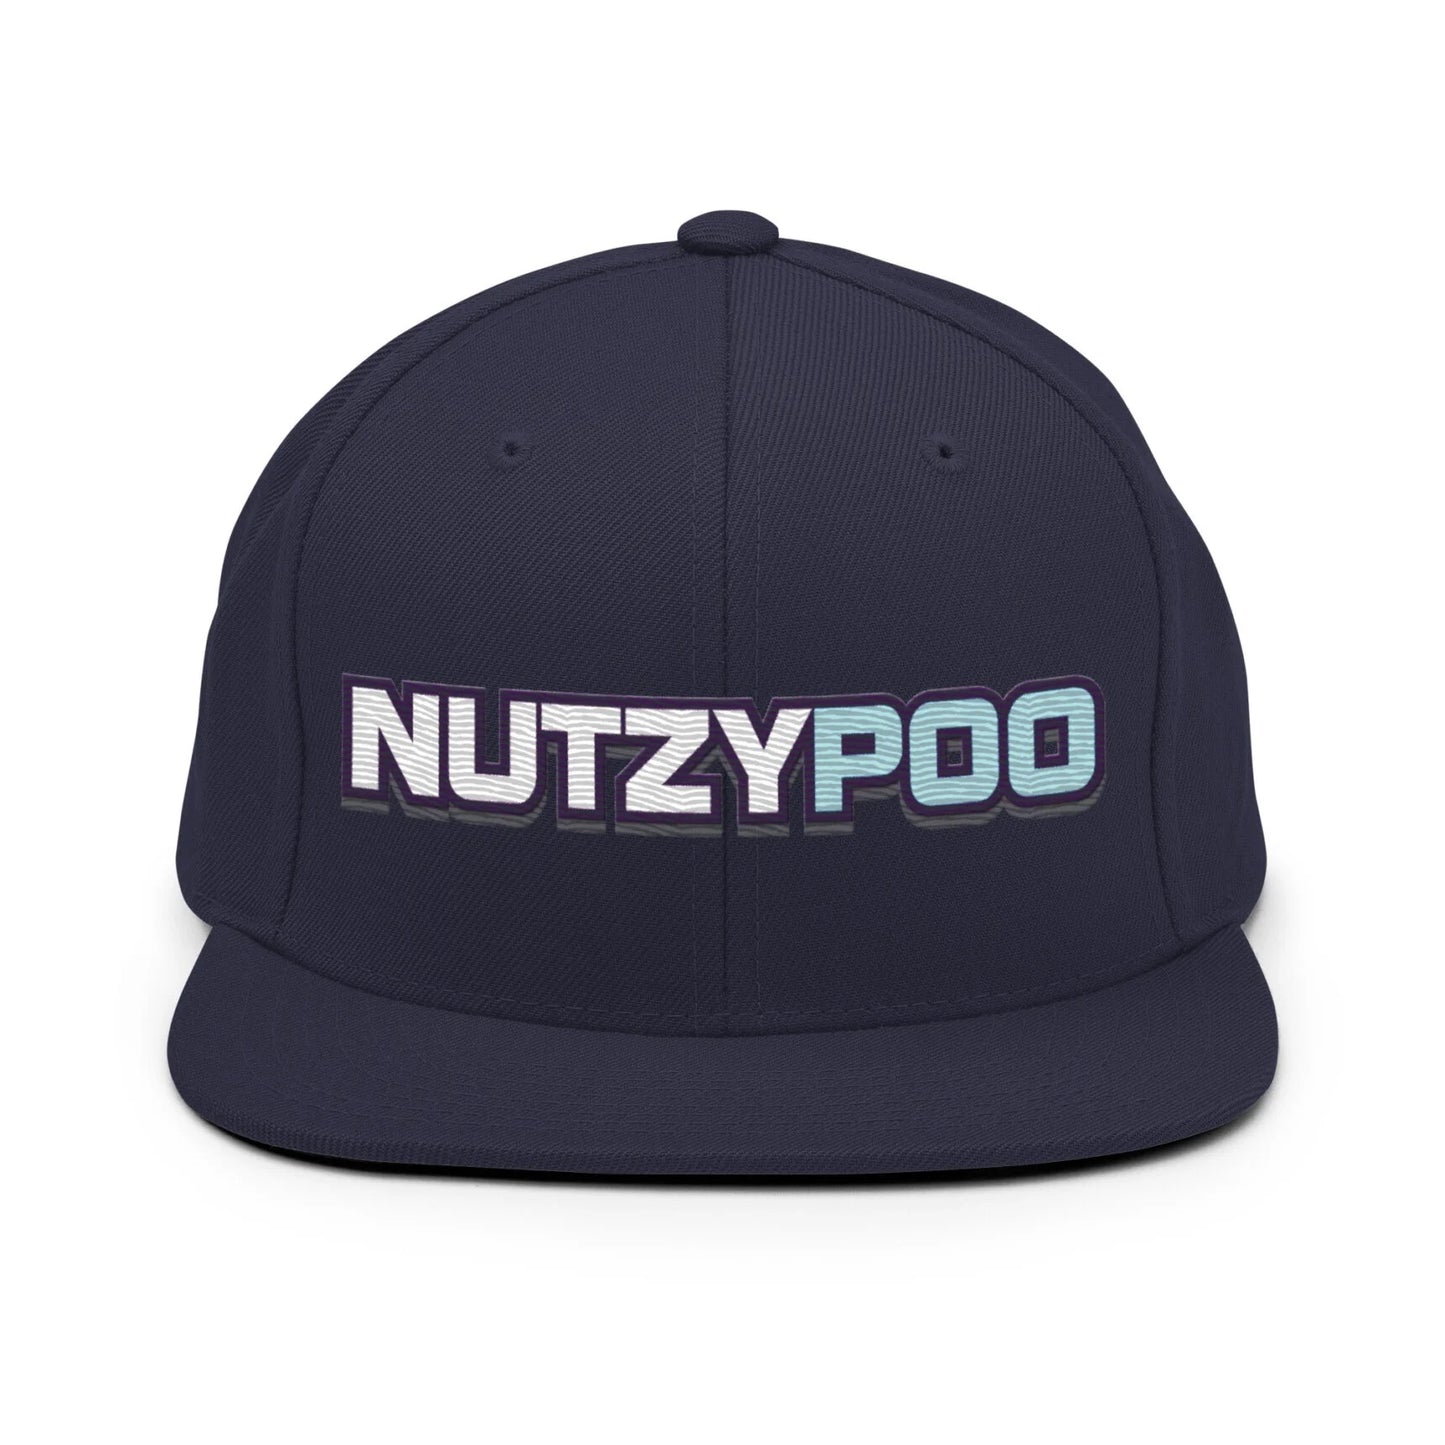 NutzyPoo ShowZone hat in navy blue